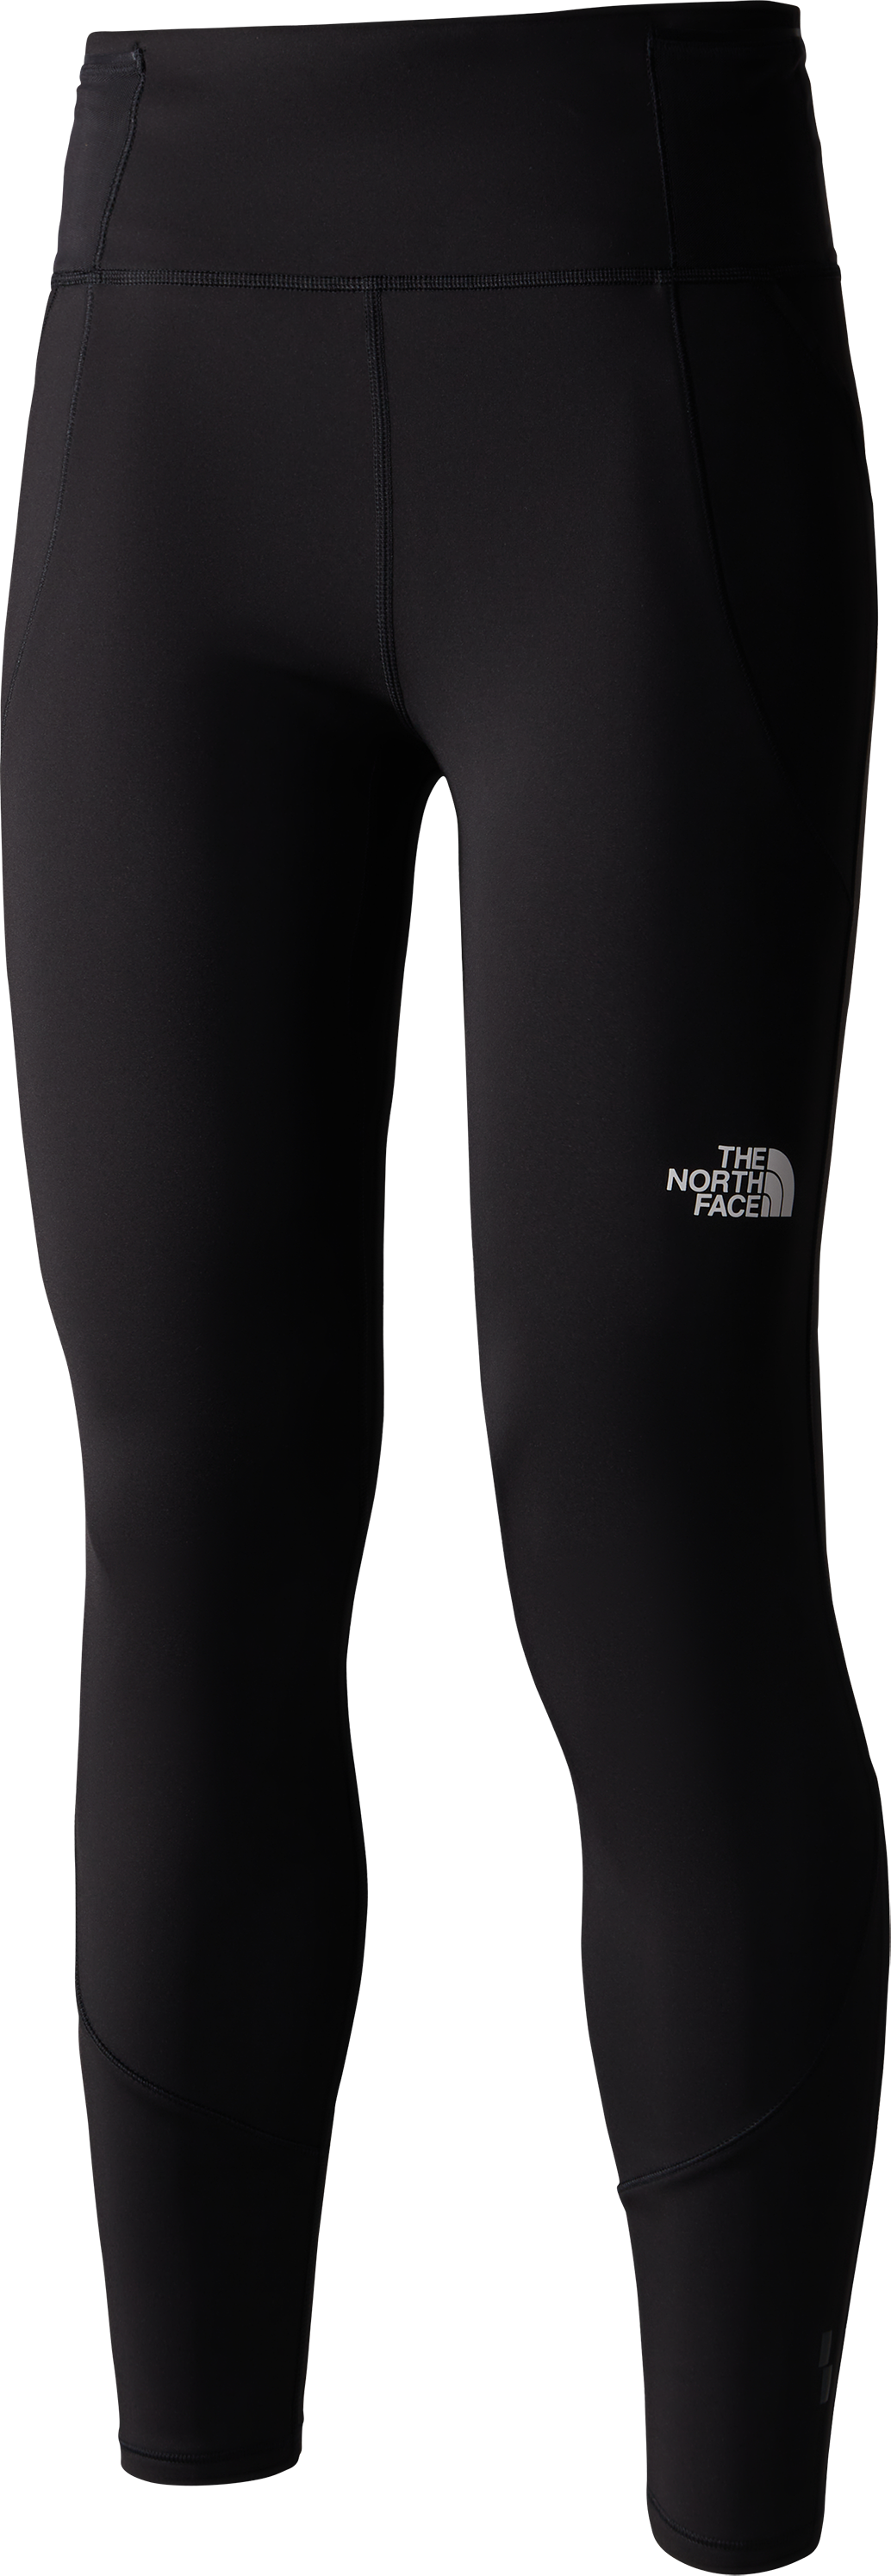 Women's Winter Warm Pro Leggings TNF BLACK, Buy Women's Winter Warm Pro Leggings  TNF BLACK here